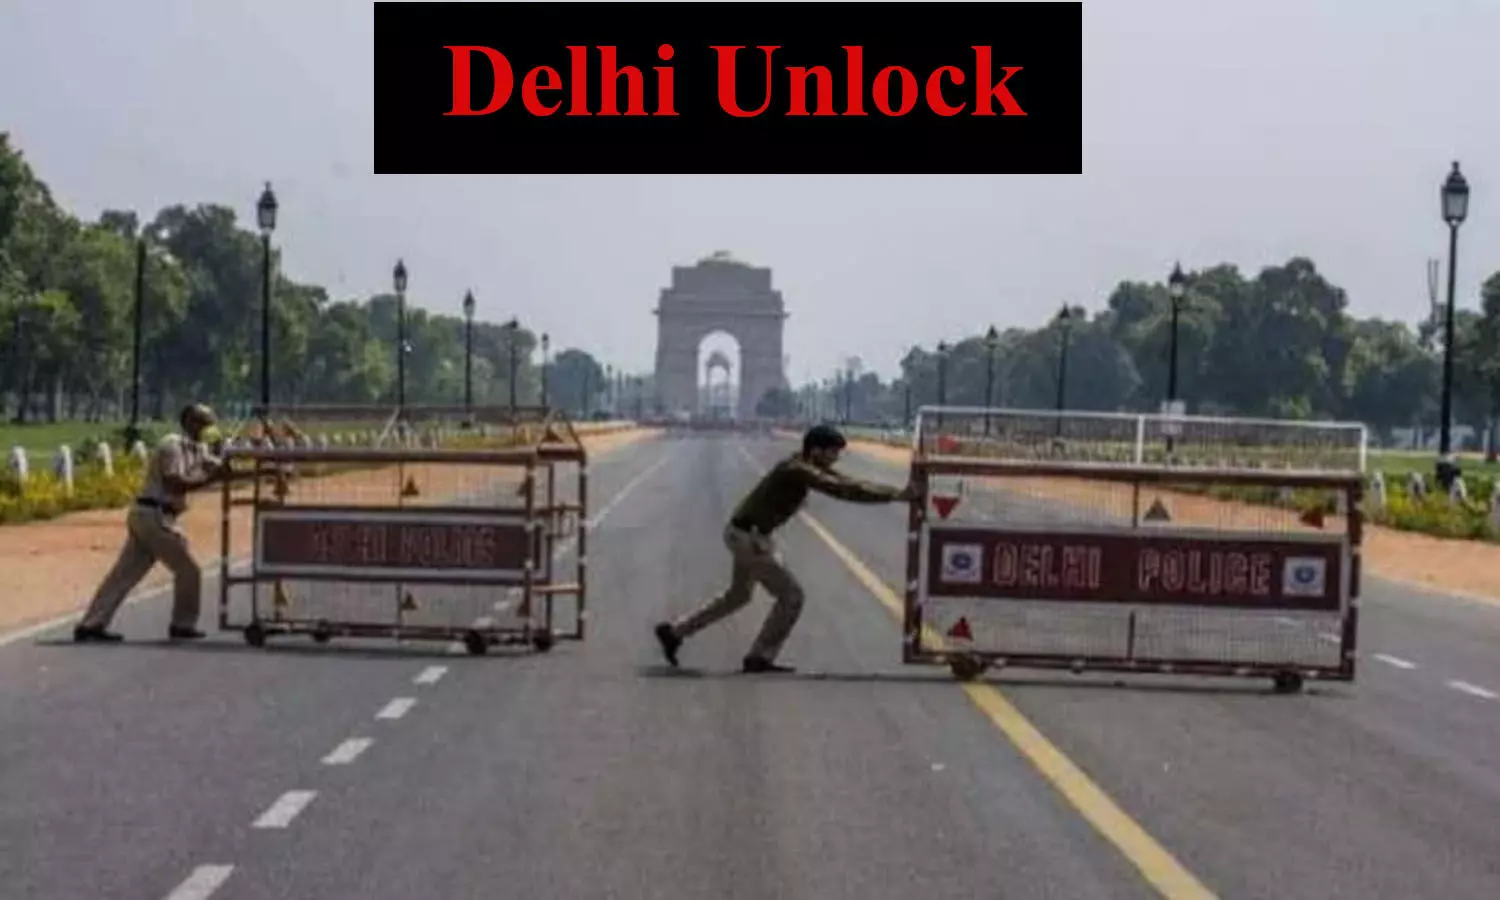 Delhi Unlock updates